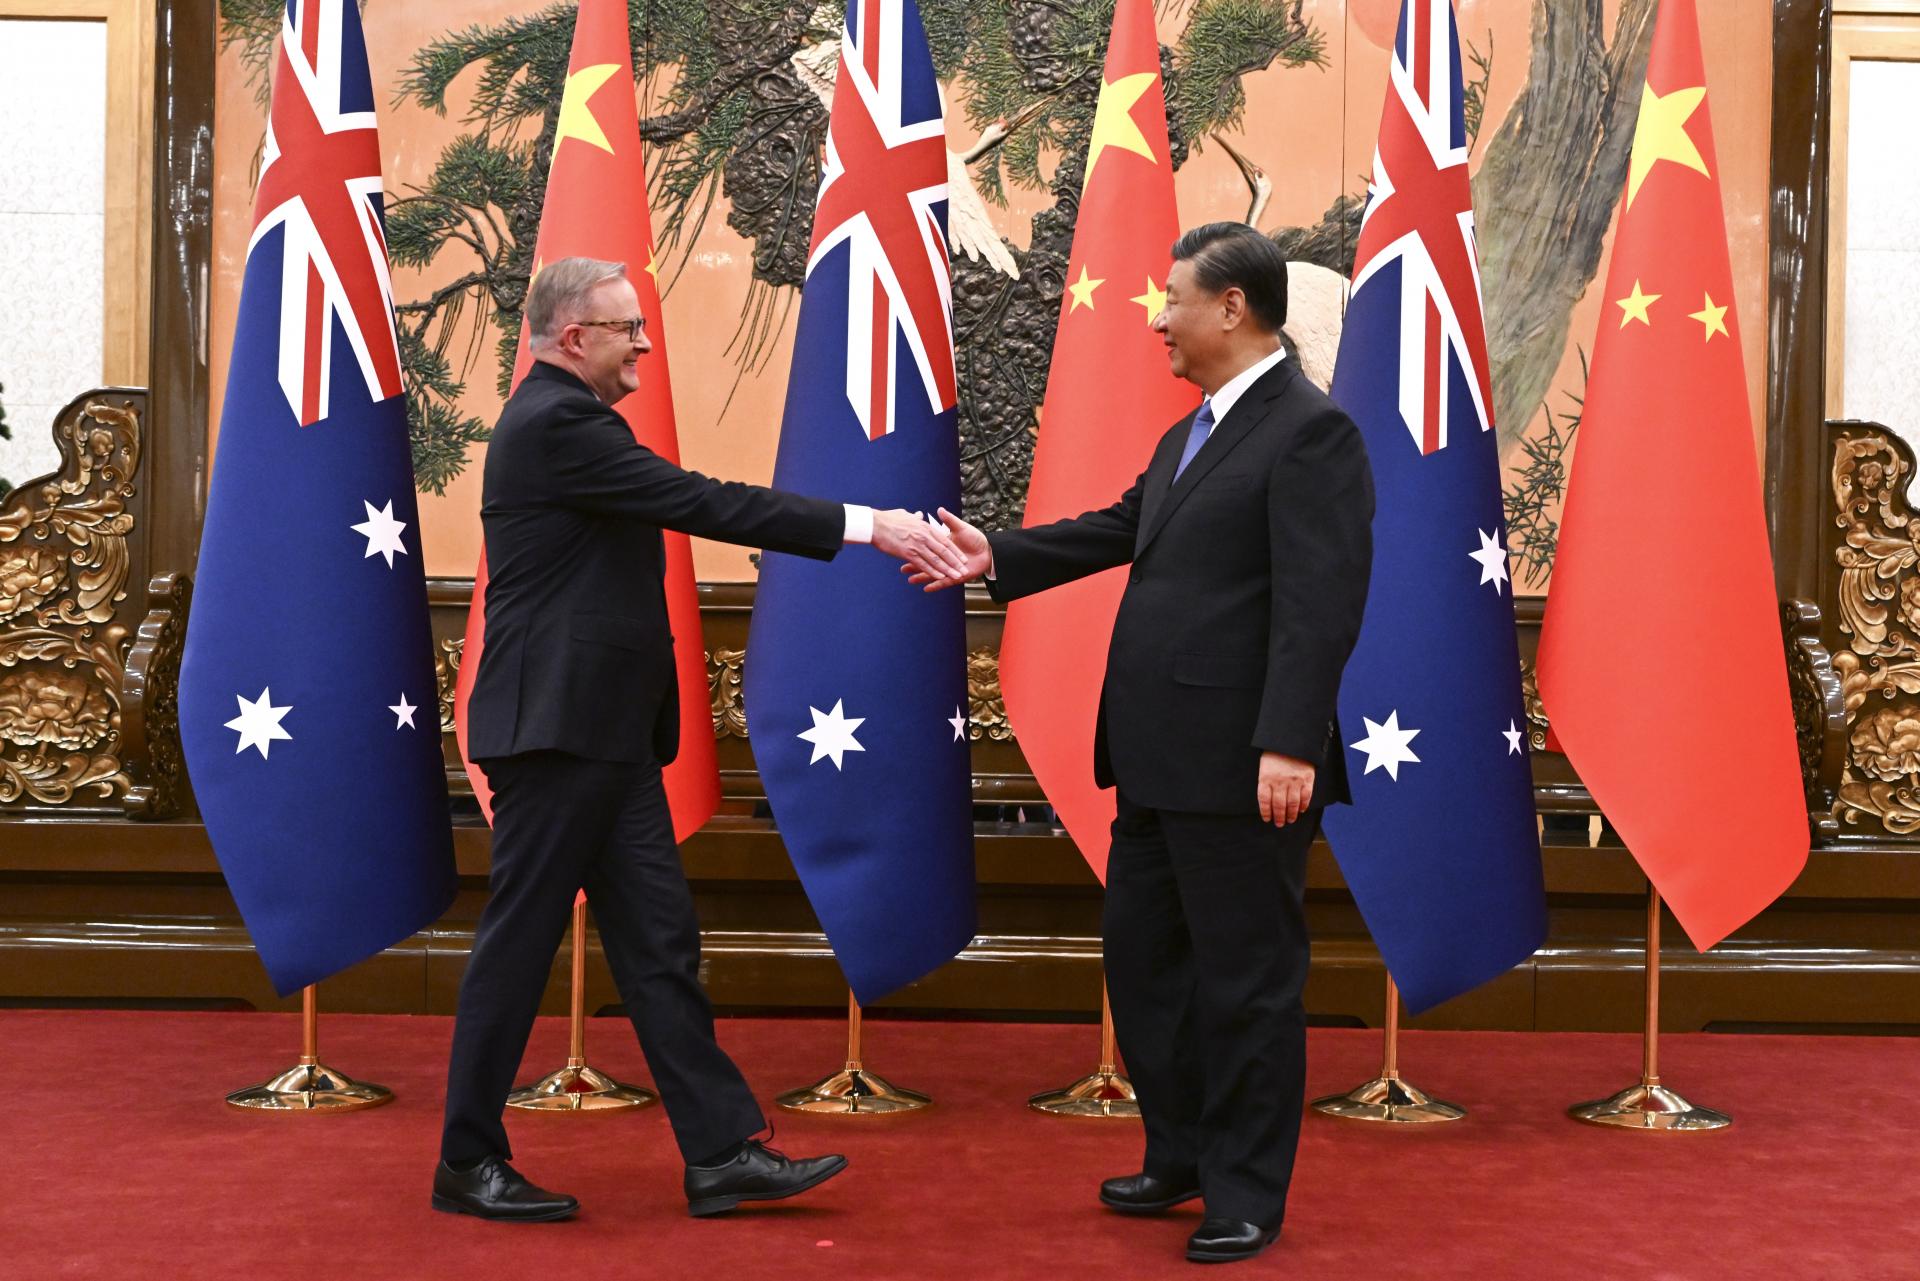 Čína a Austrália smerujú k tomu, aby si dôverovali ako partneri, vyhlásil Si Ťin-pching